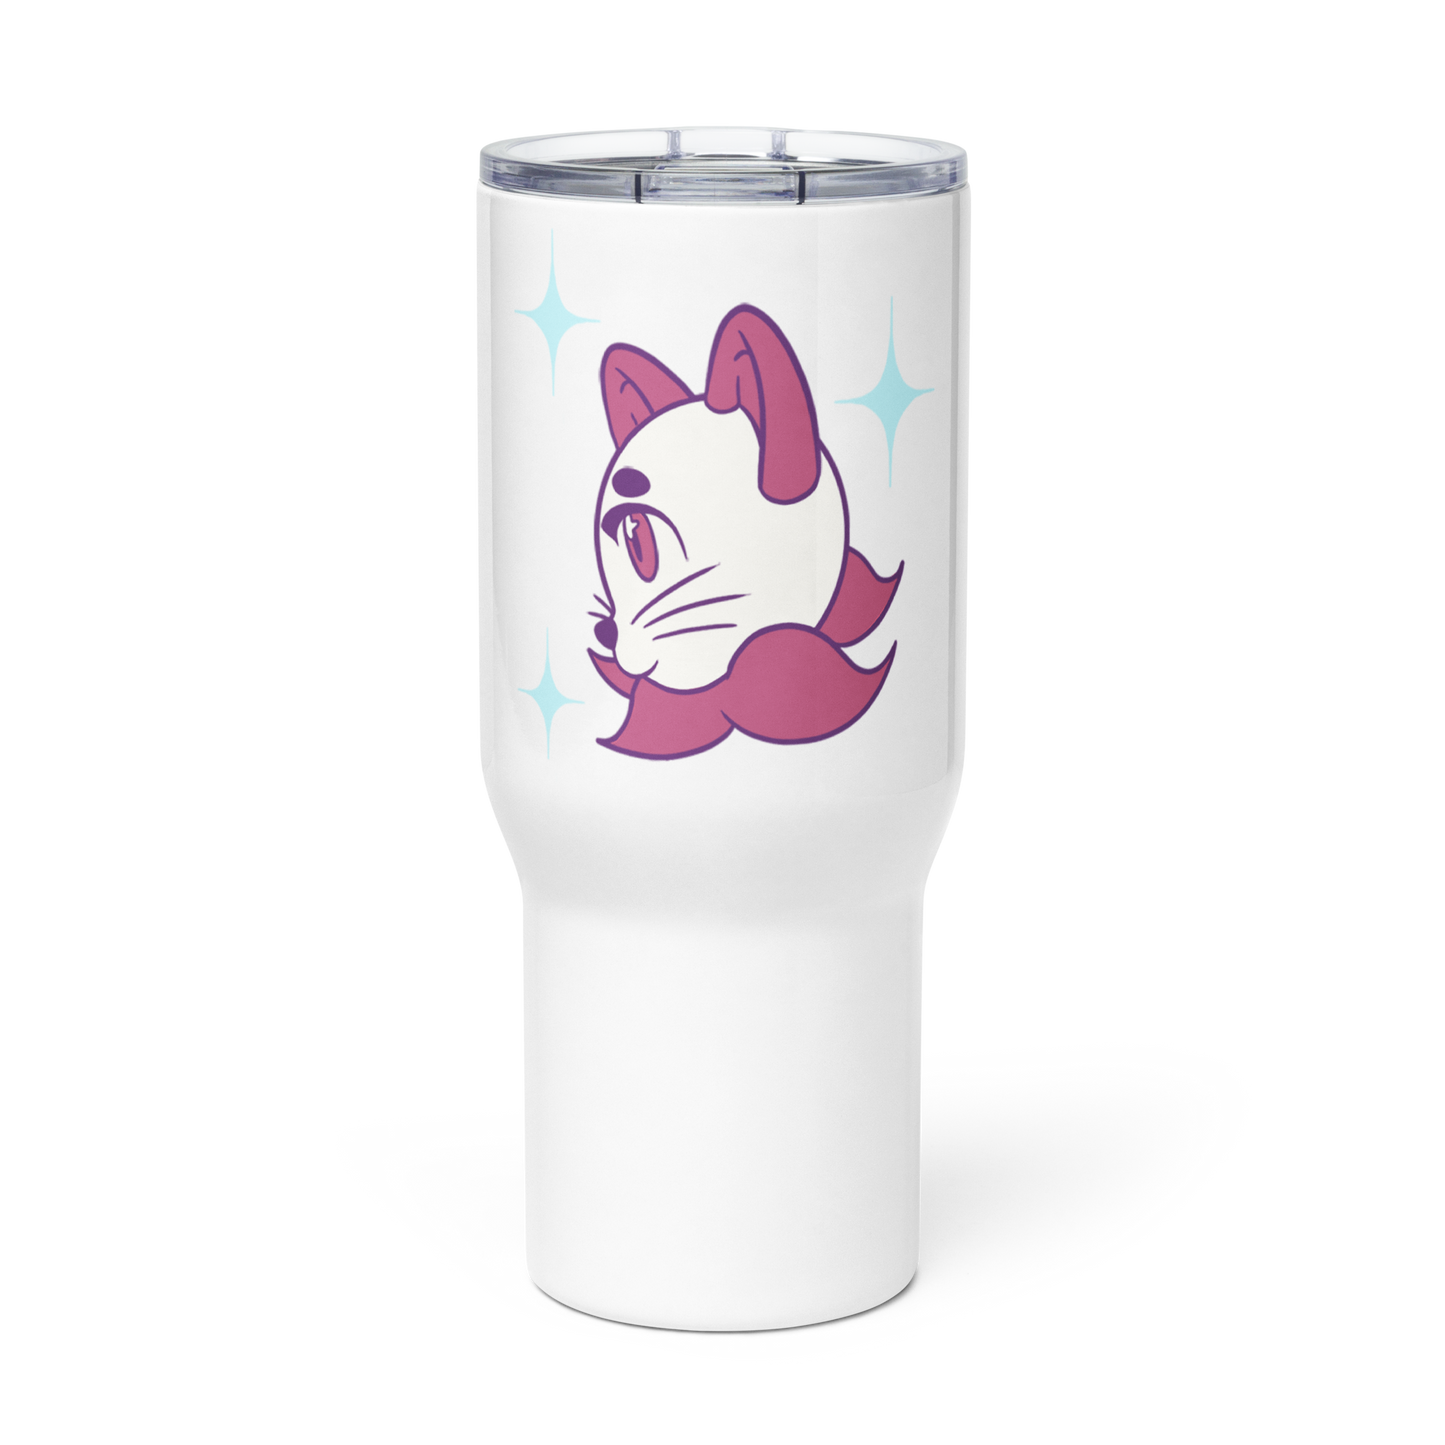 Star Cat Travel mug